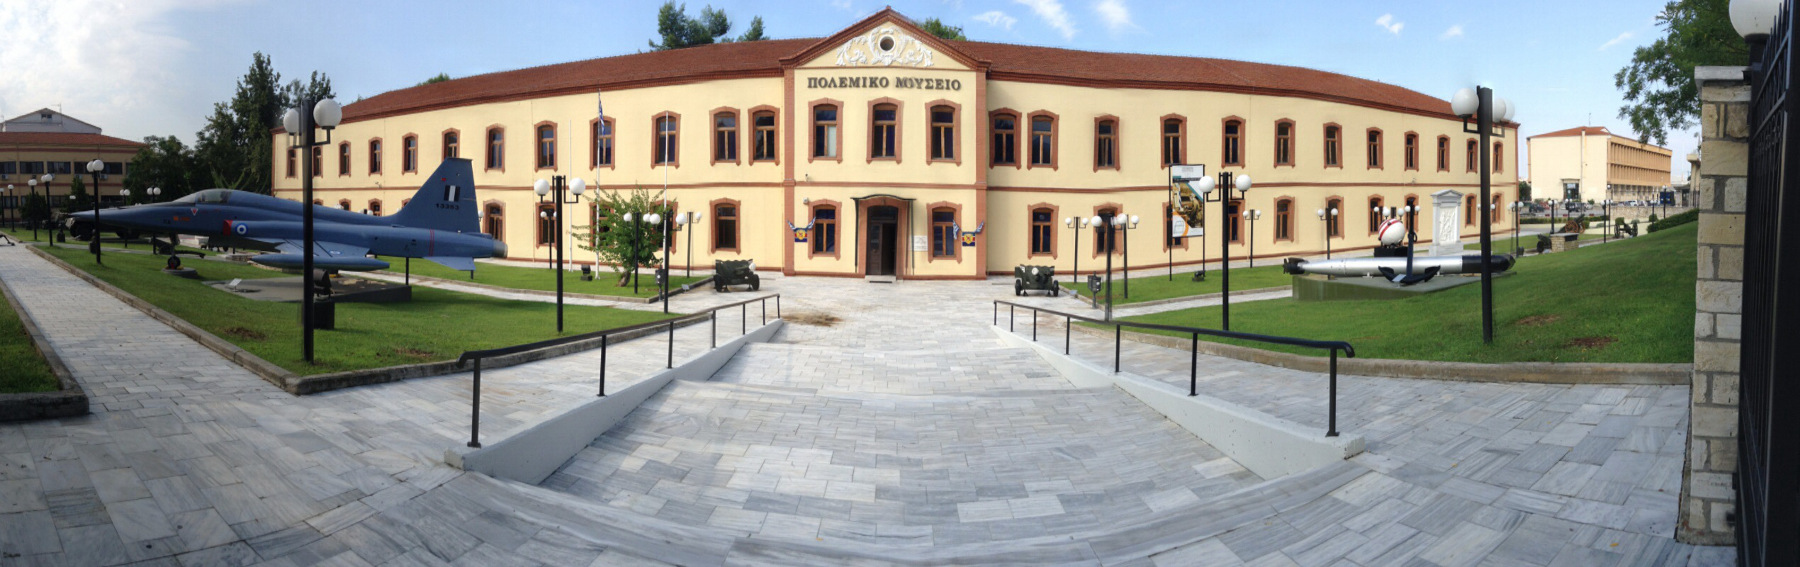 Πρόσκληση σε ημερίδα με θέμα:  Εκπαιδευτικά Προγράμματα του Πολεμικού Μουσείου Θεσσαλονίκης